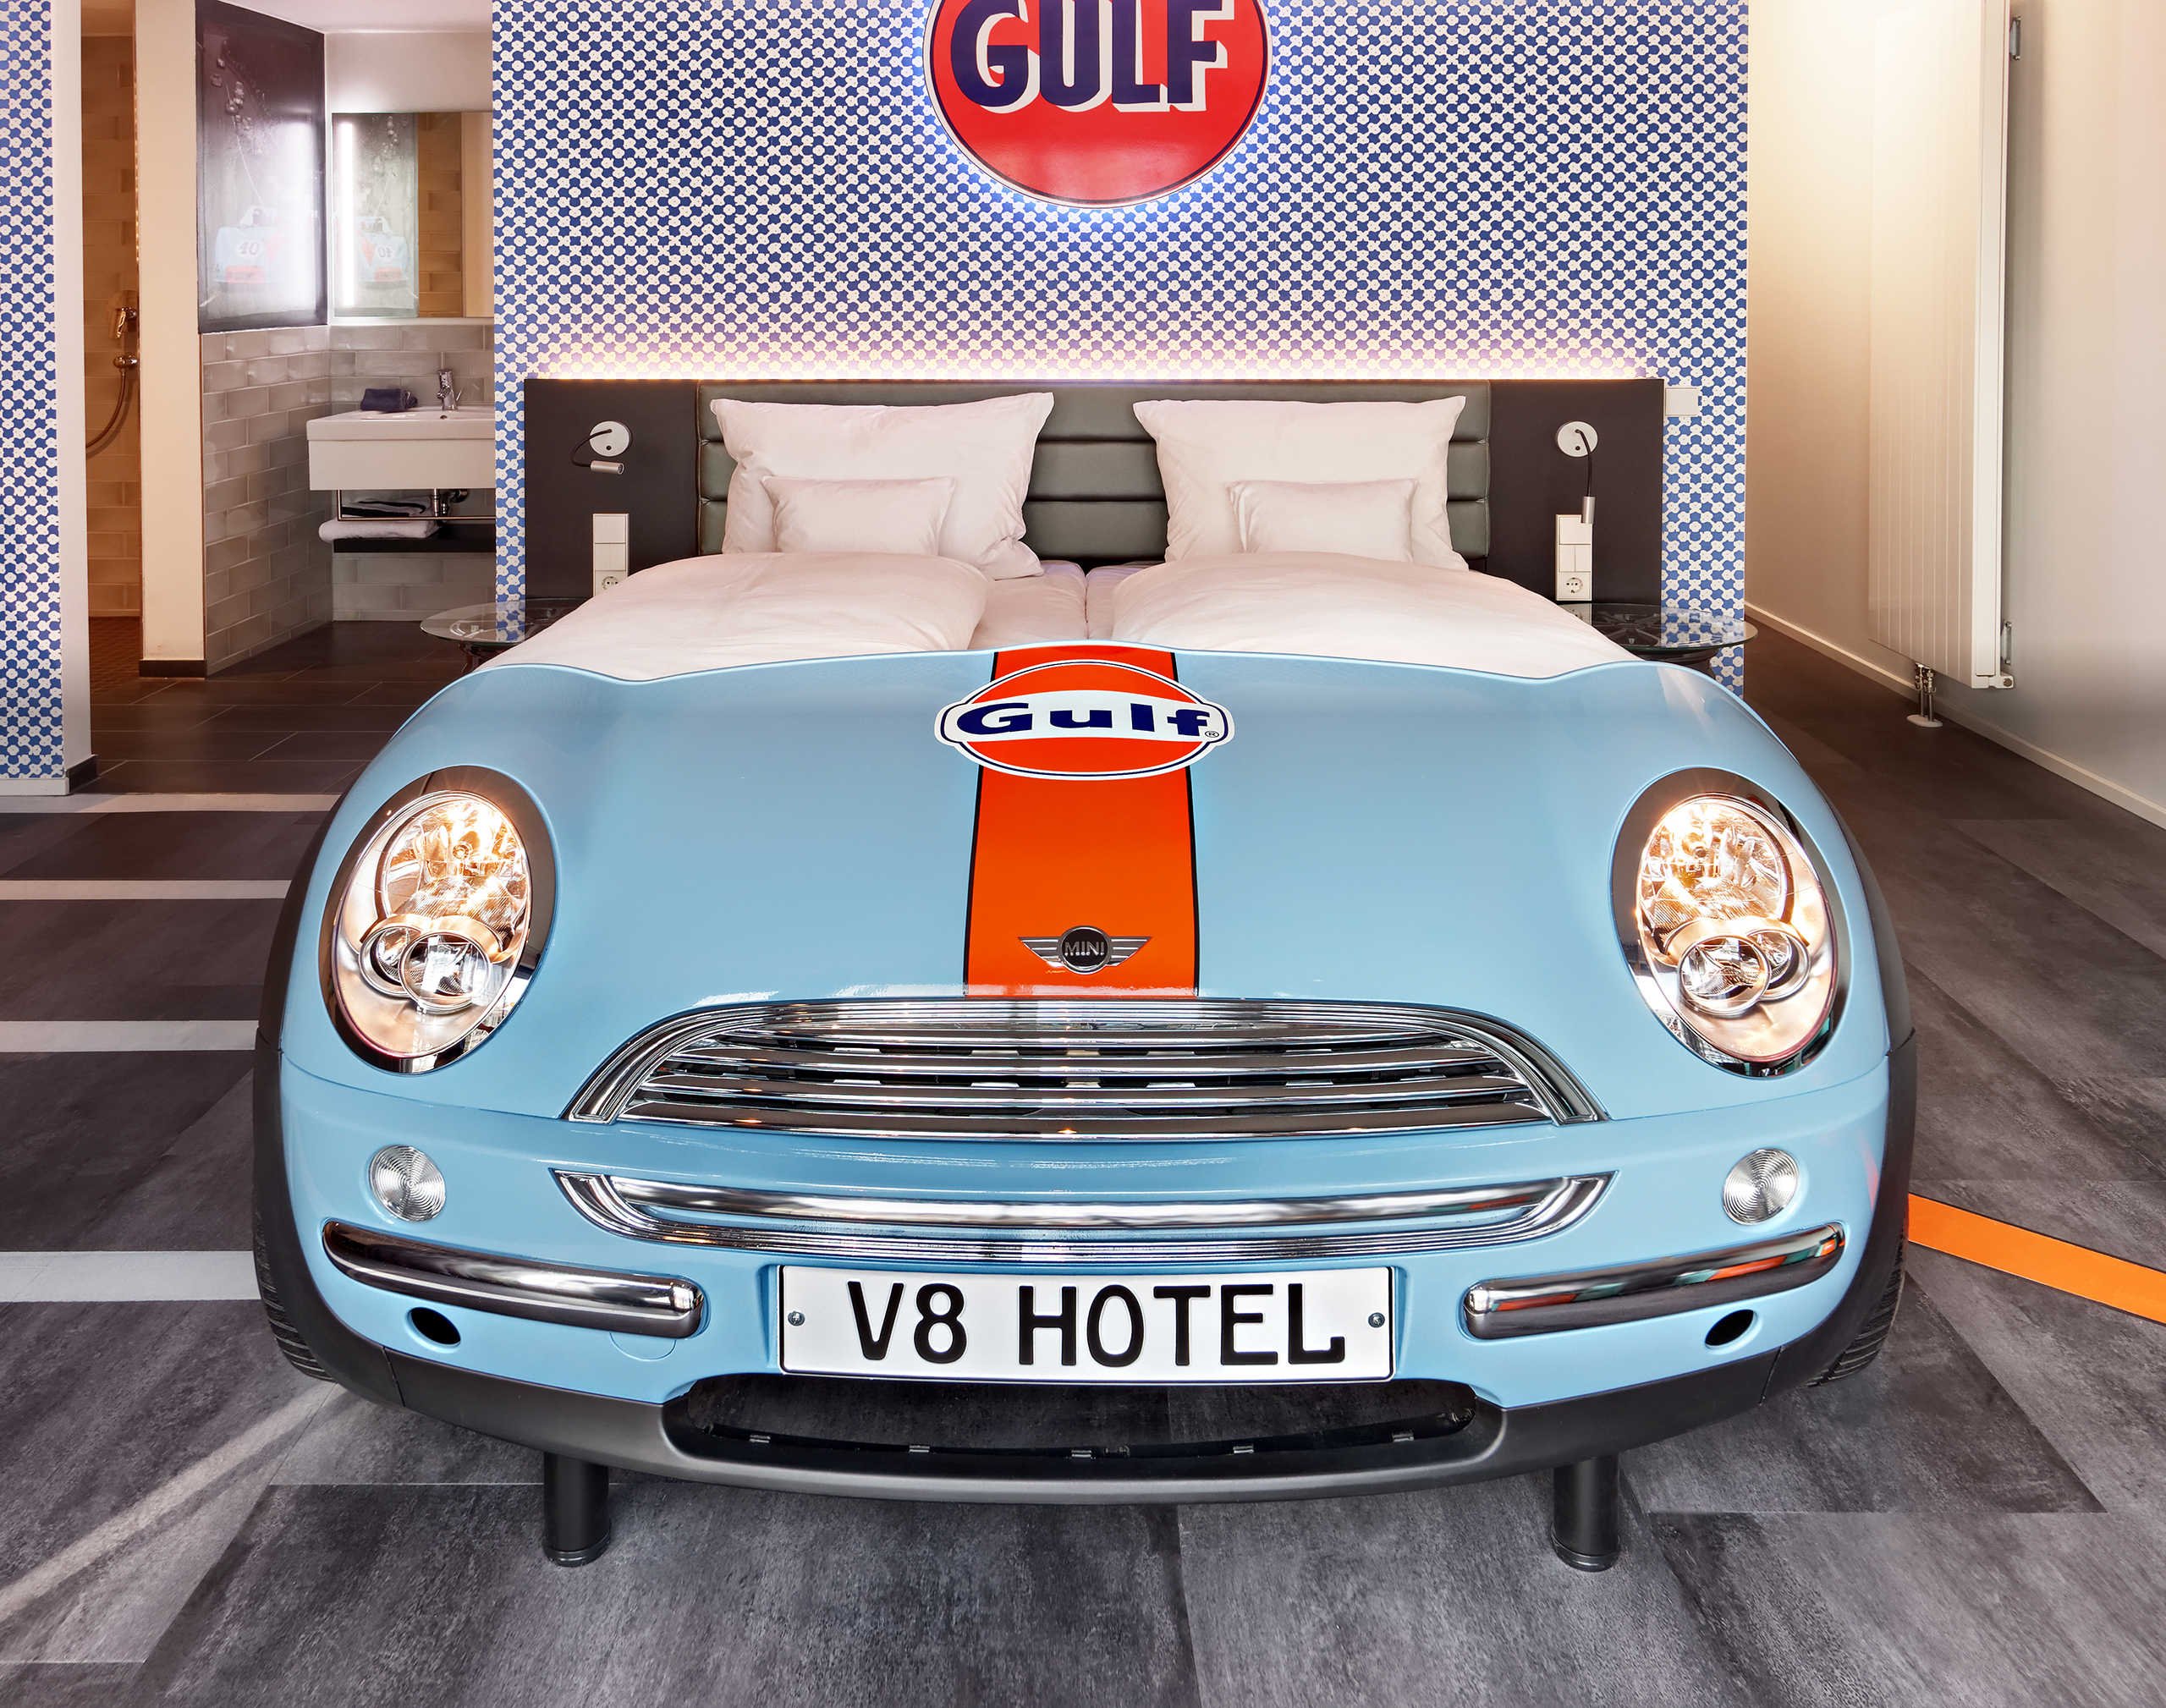 Blick auf ein hellblaues Autobett der Marke Mini an einer karierten Wand mit dem orangefarbenen Gulf-Logo